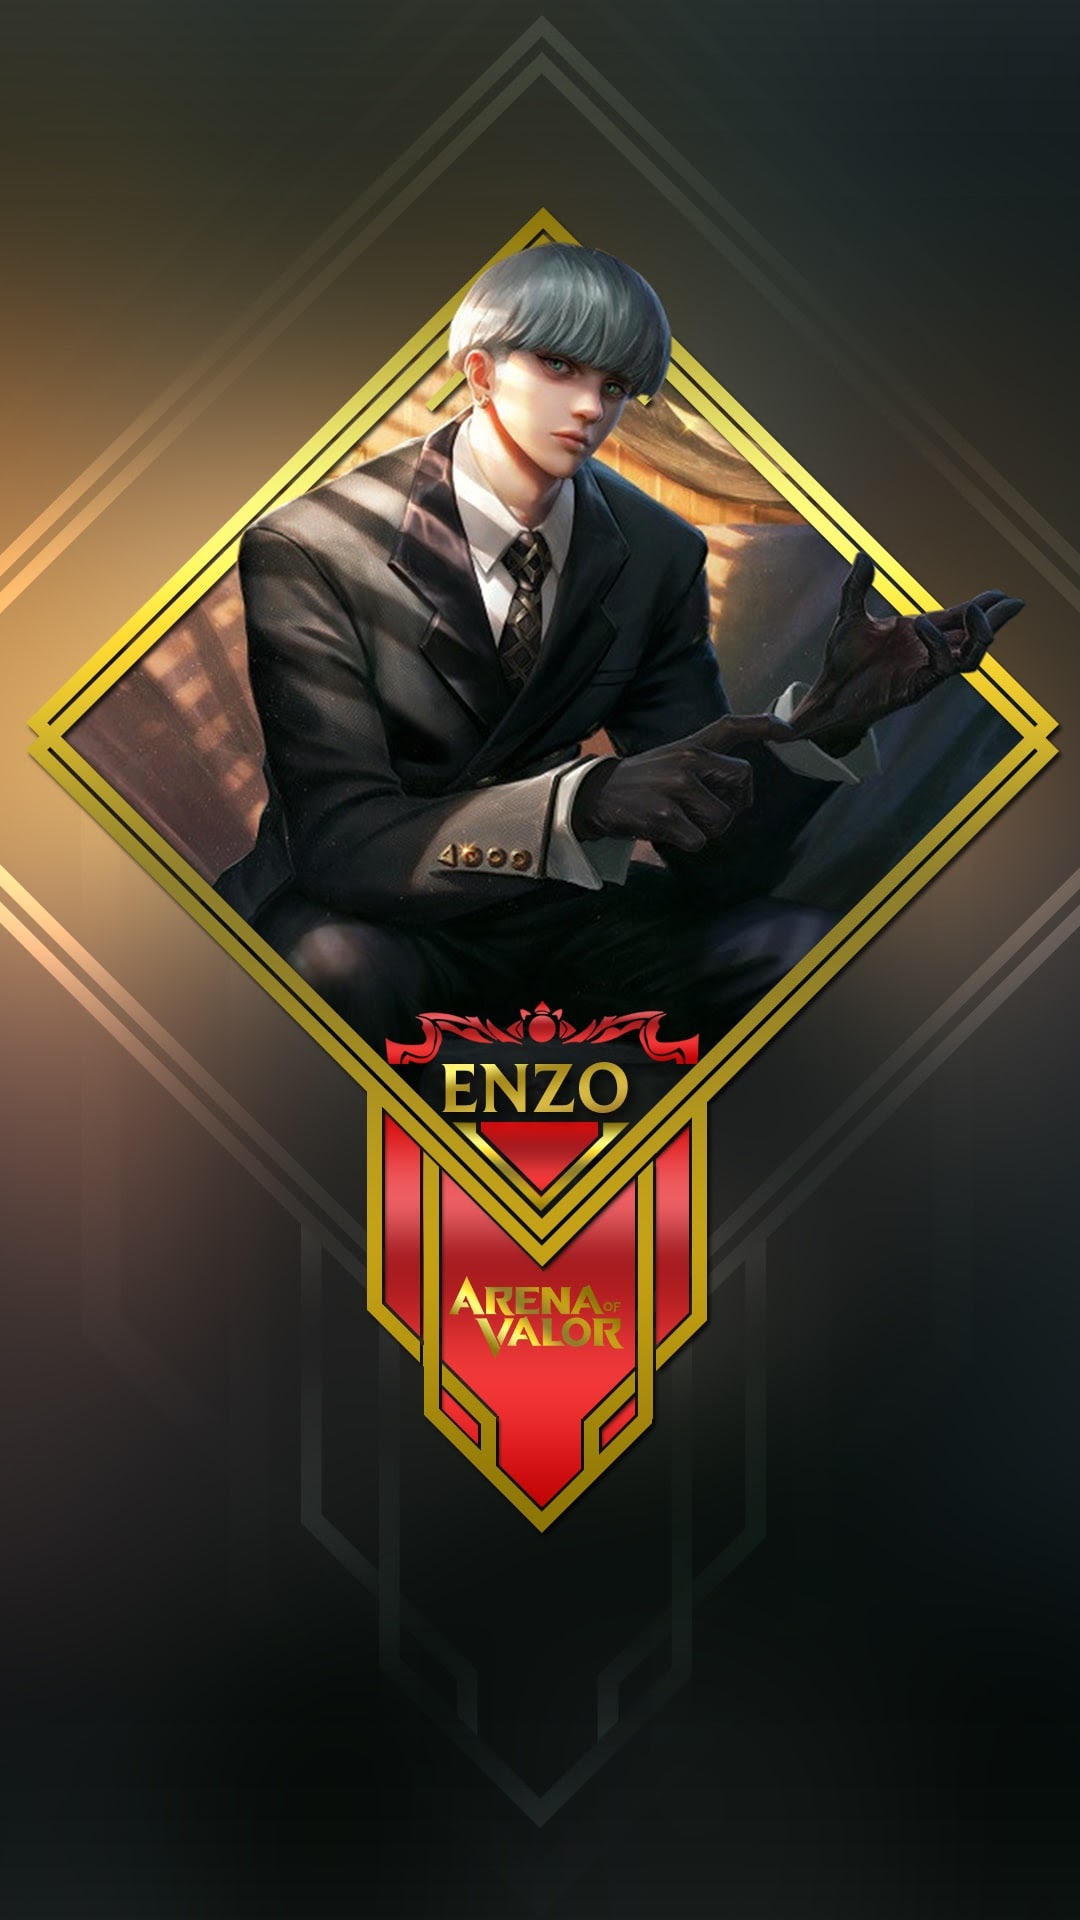 Enzo là một trong những vị tướng đáng xem trong Liên Quân Mobile. Với khả năng sử dụng vũ khí cực kỳ độc đáo, Enzo chắc chắn sẽ khiến bạn phải ghi nhớ mãi mãi. Xem ngay hình ảnh của Enzo và khám phá thế giới đầy kỳ vĩ của Liên Quân Mobile.